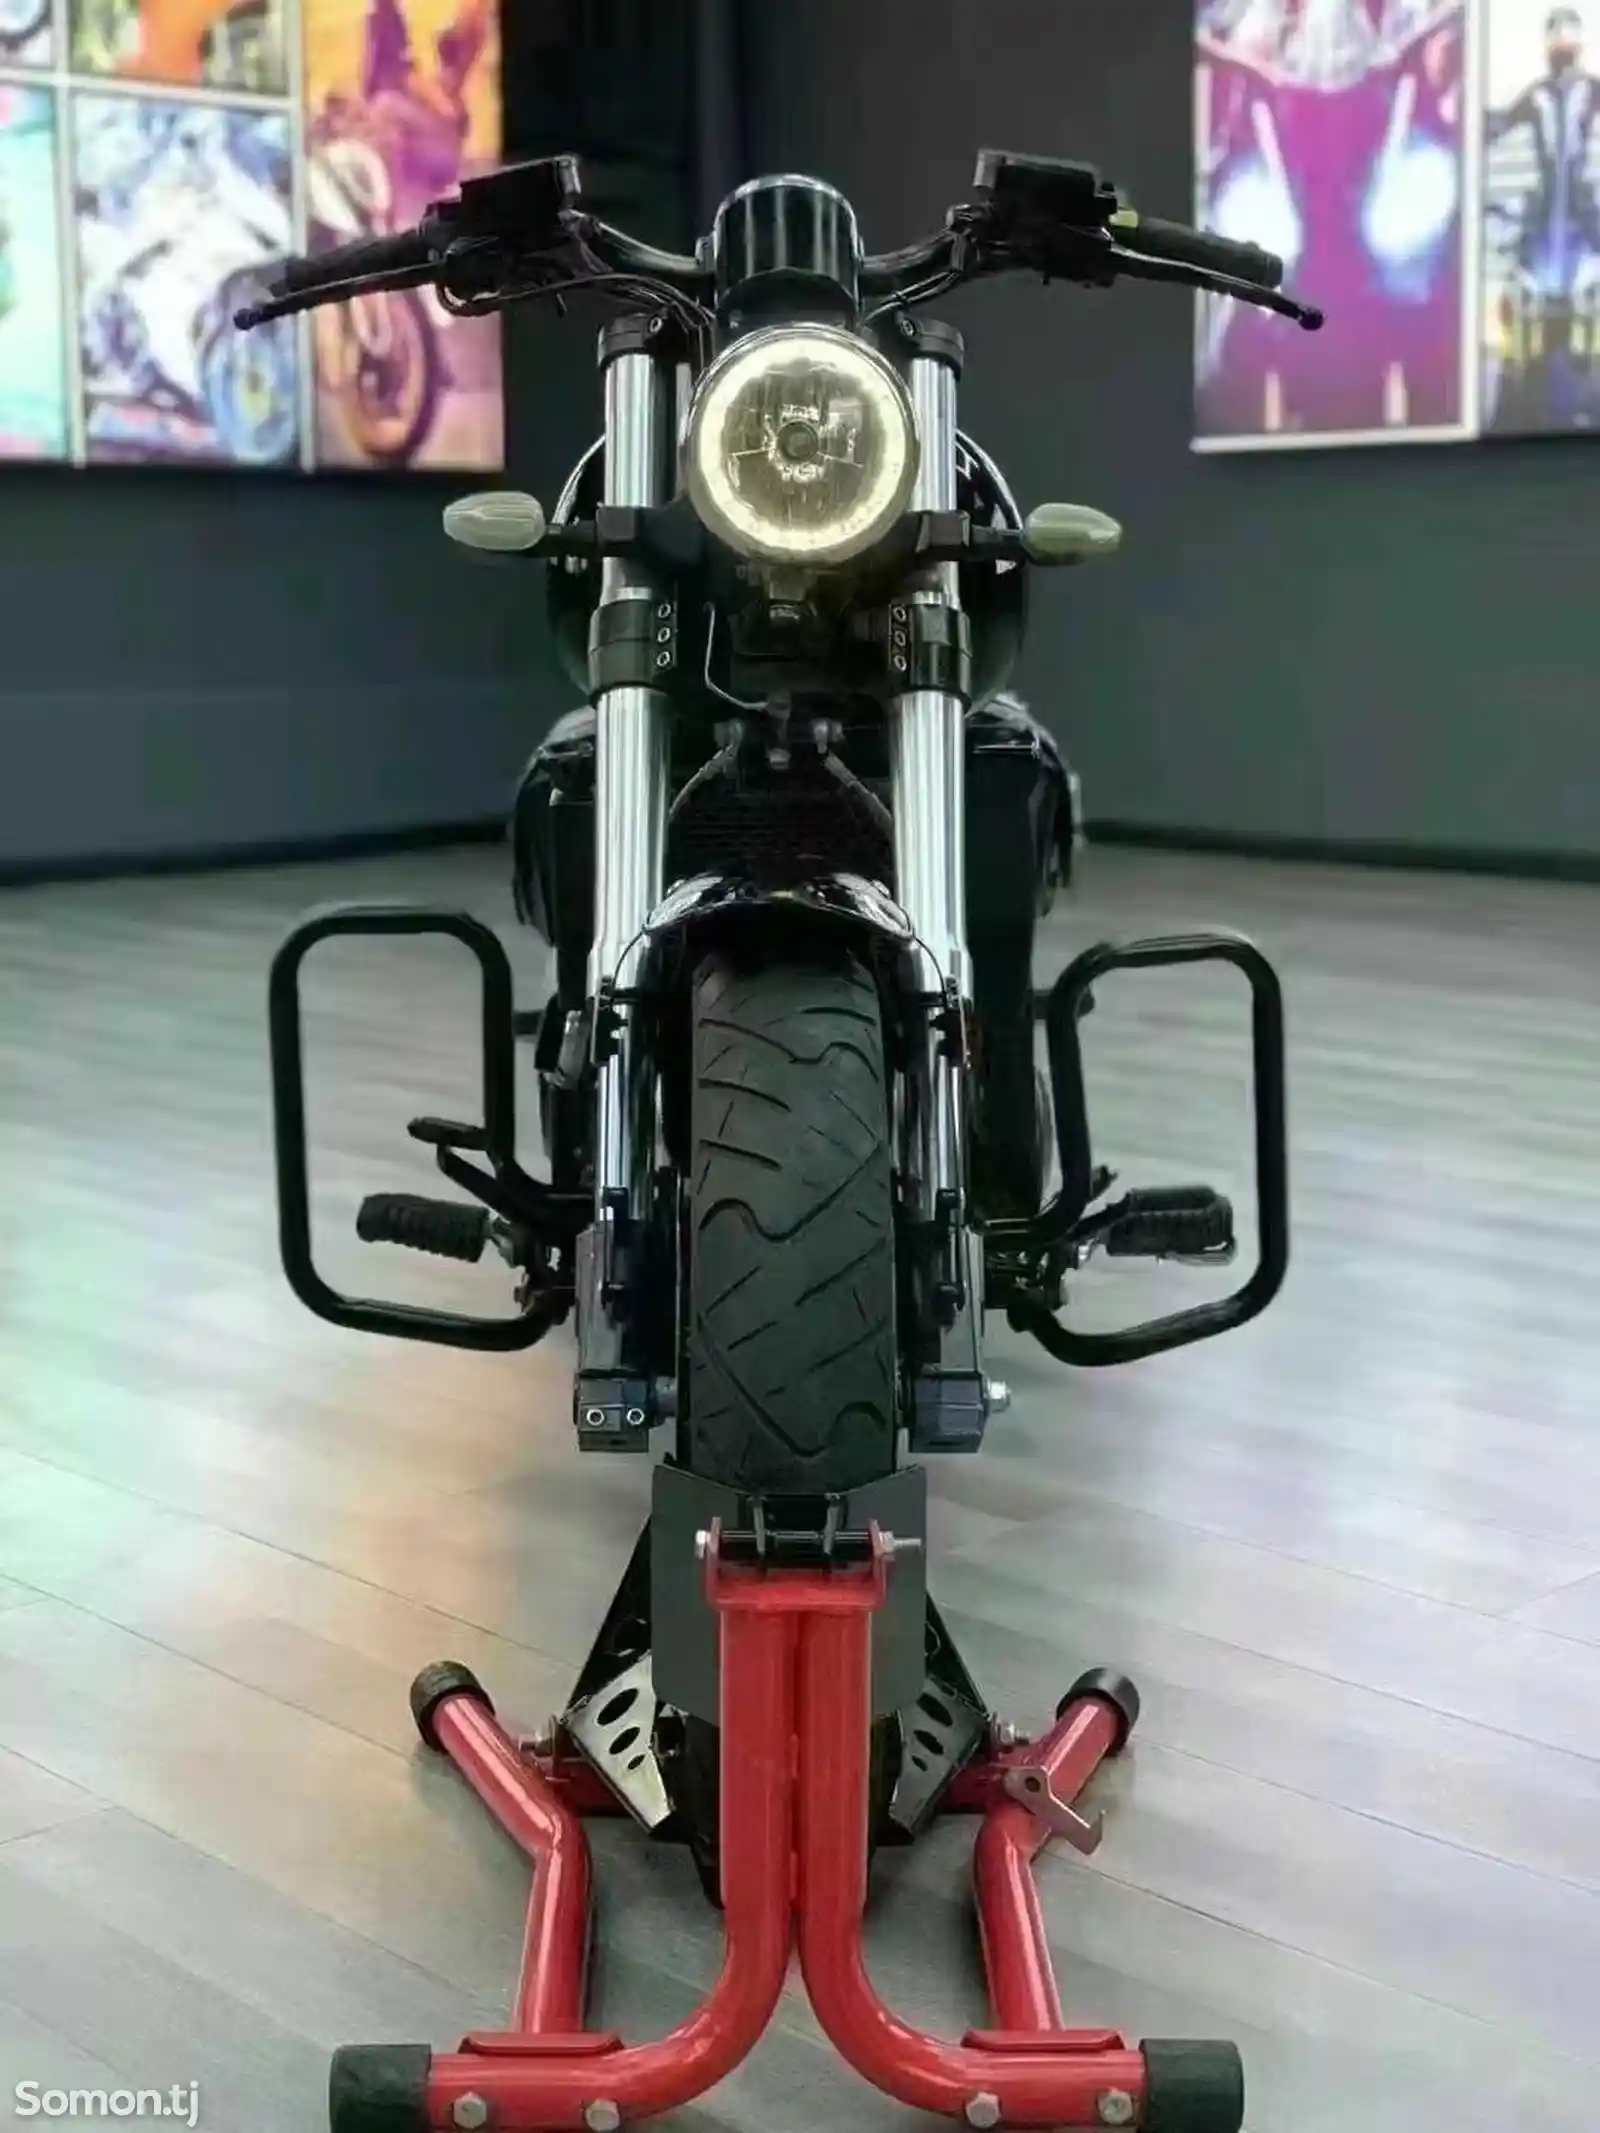 Мотоцикл Harley style 400cc на заказ-3